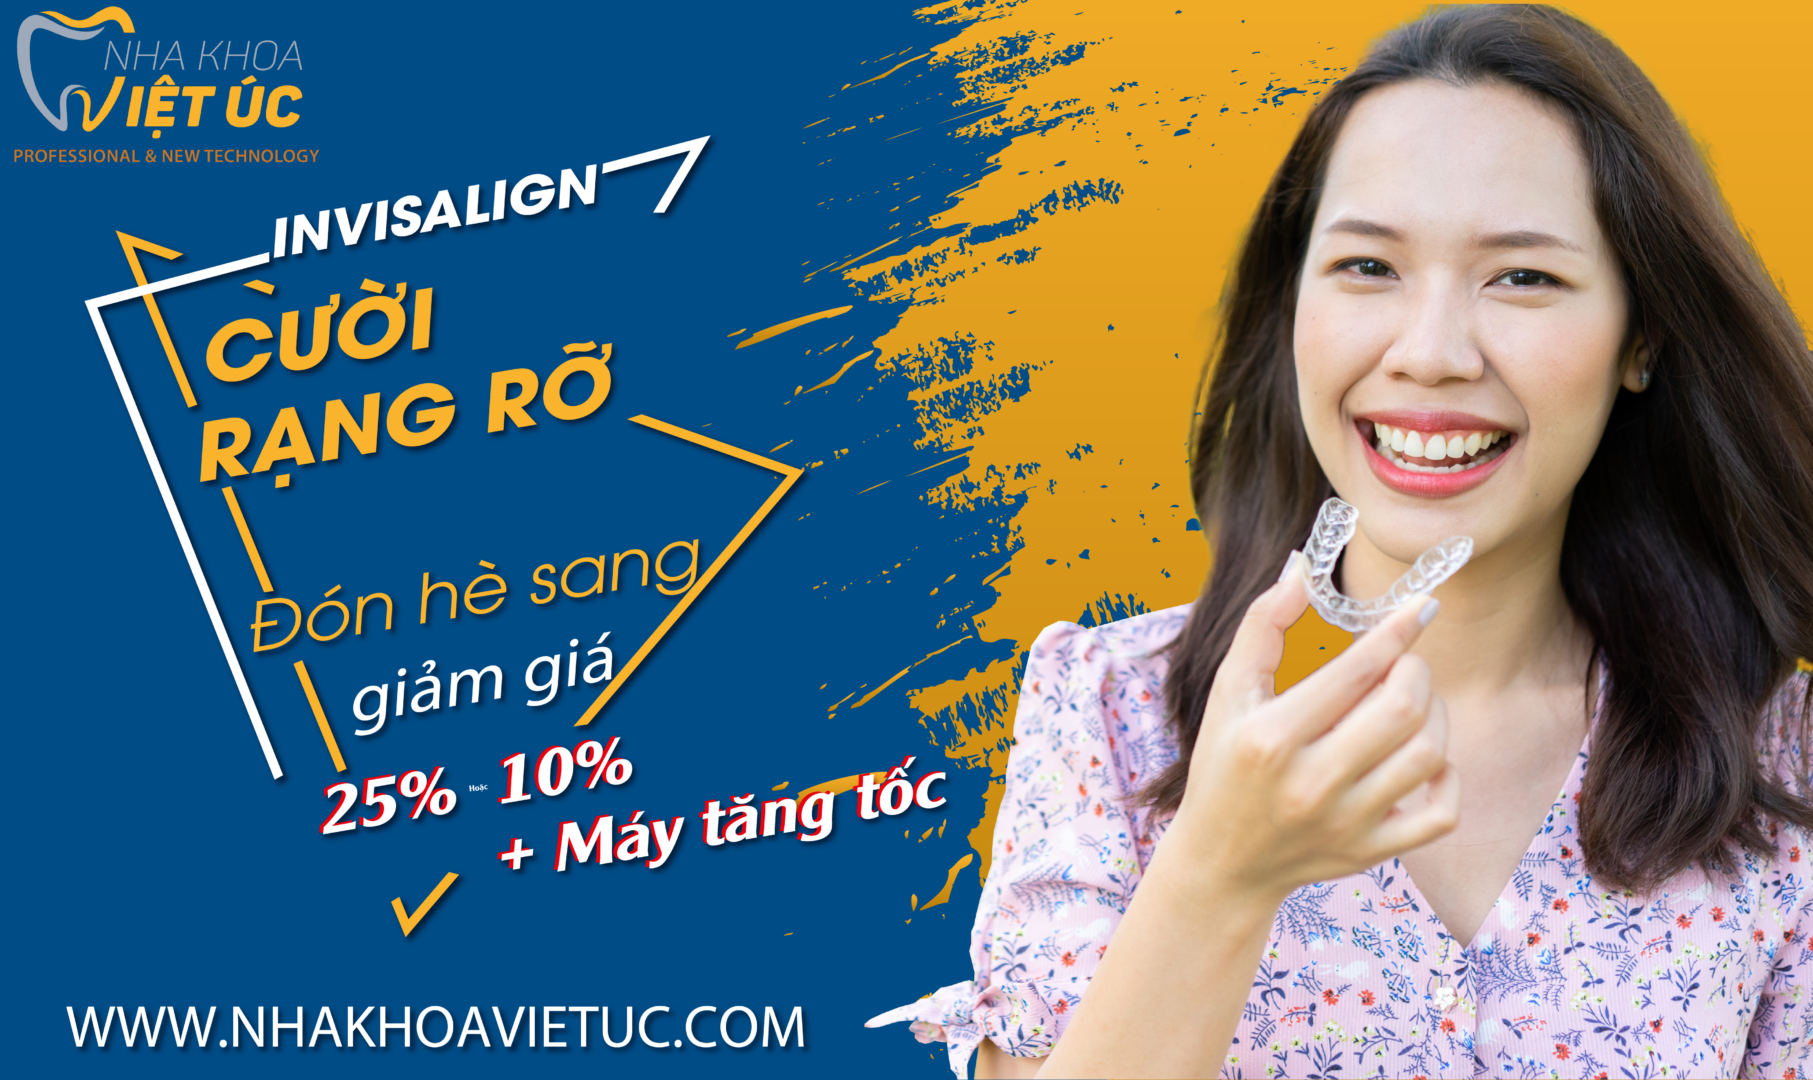 Ưu đãi Invisalign 25% tại Nha khoa Việt ÚC